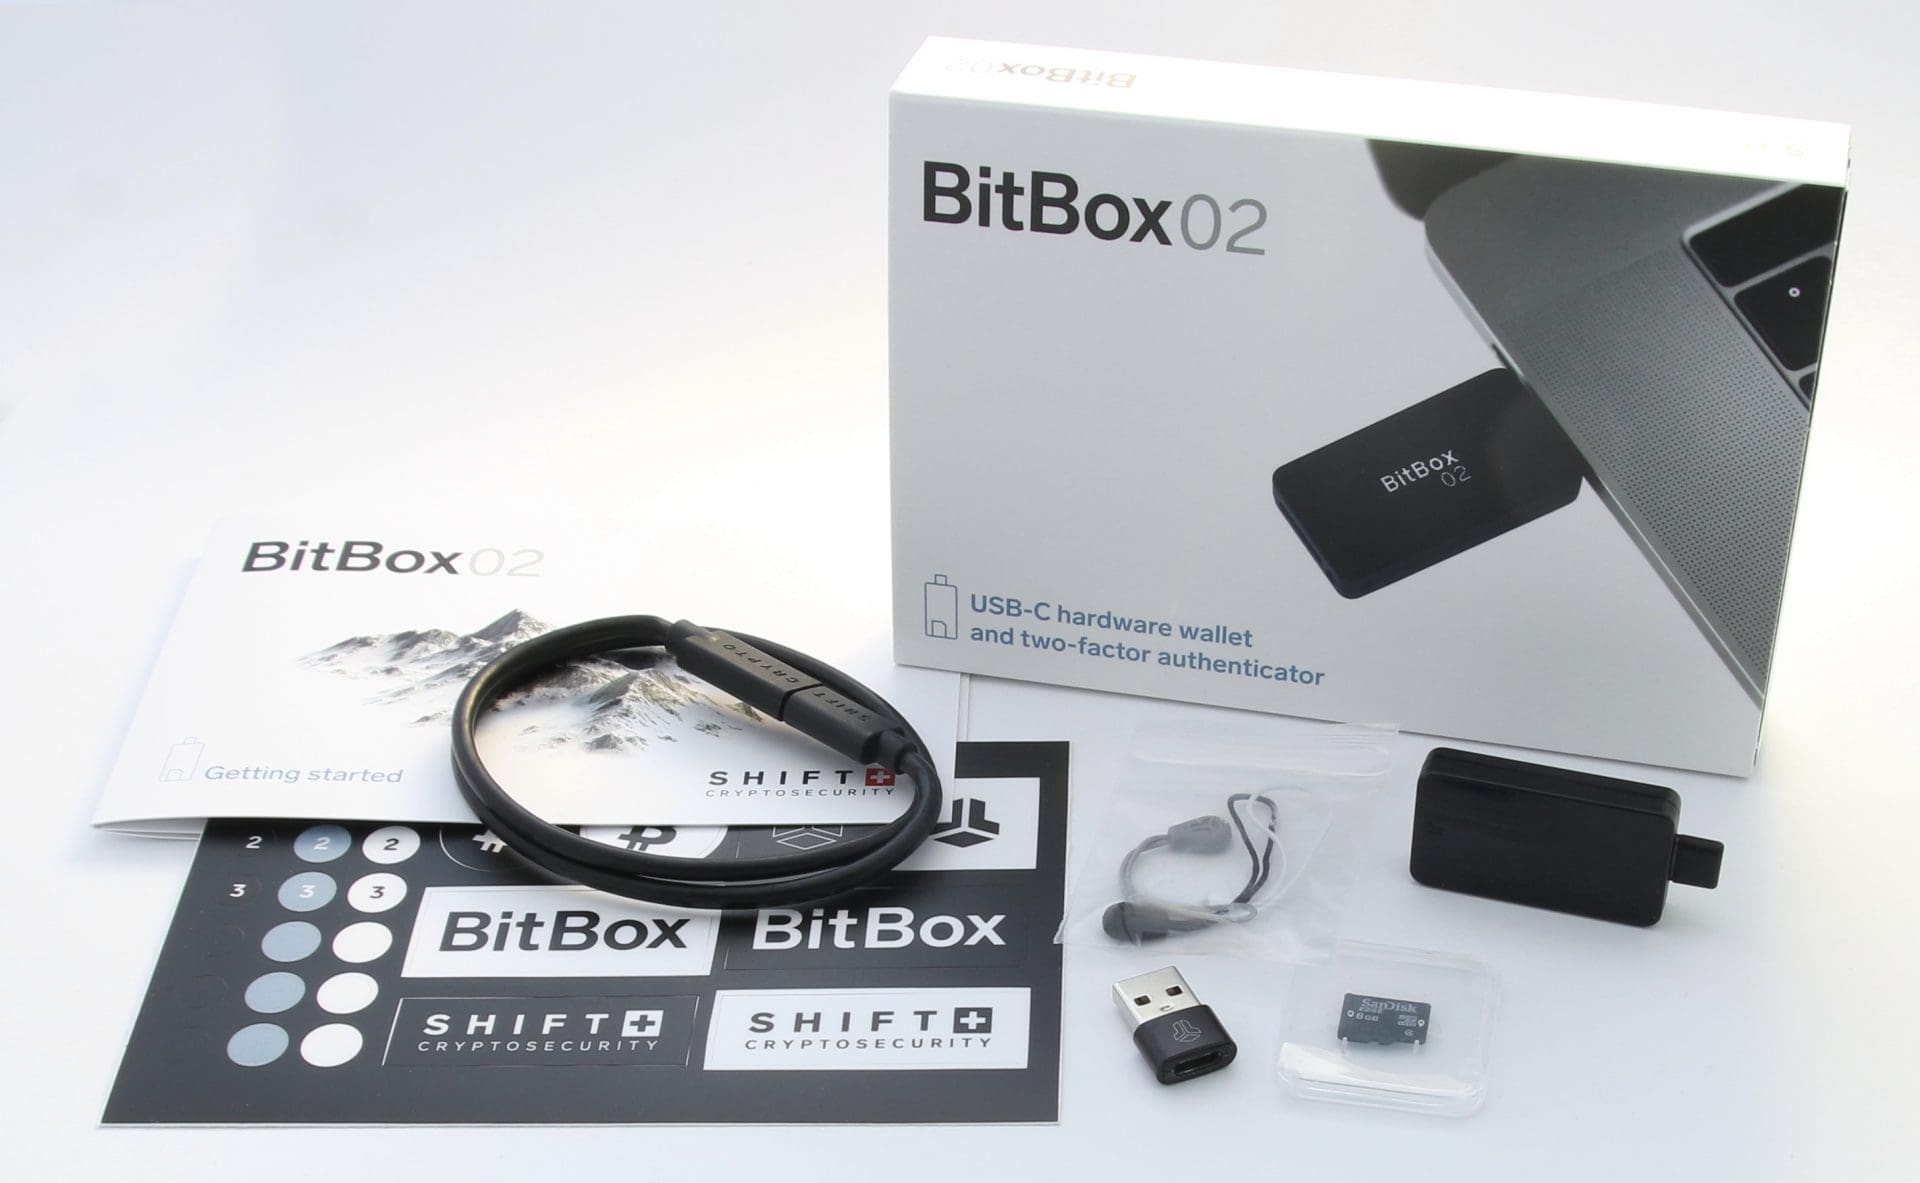 Hardware Wallet Bitbox02